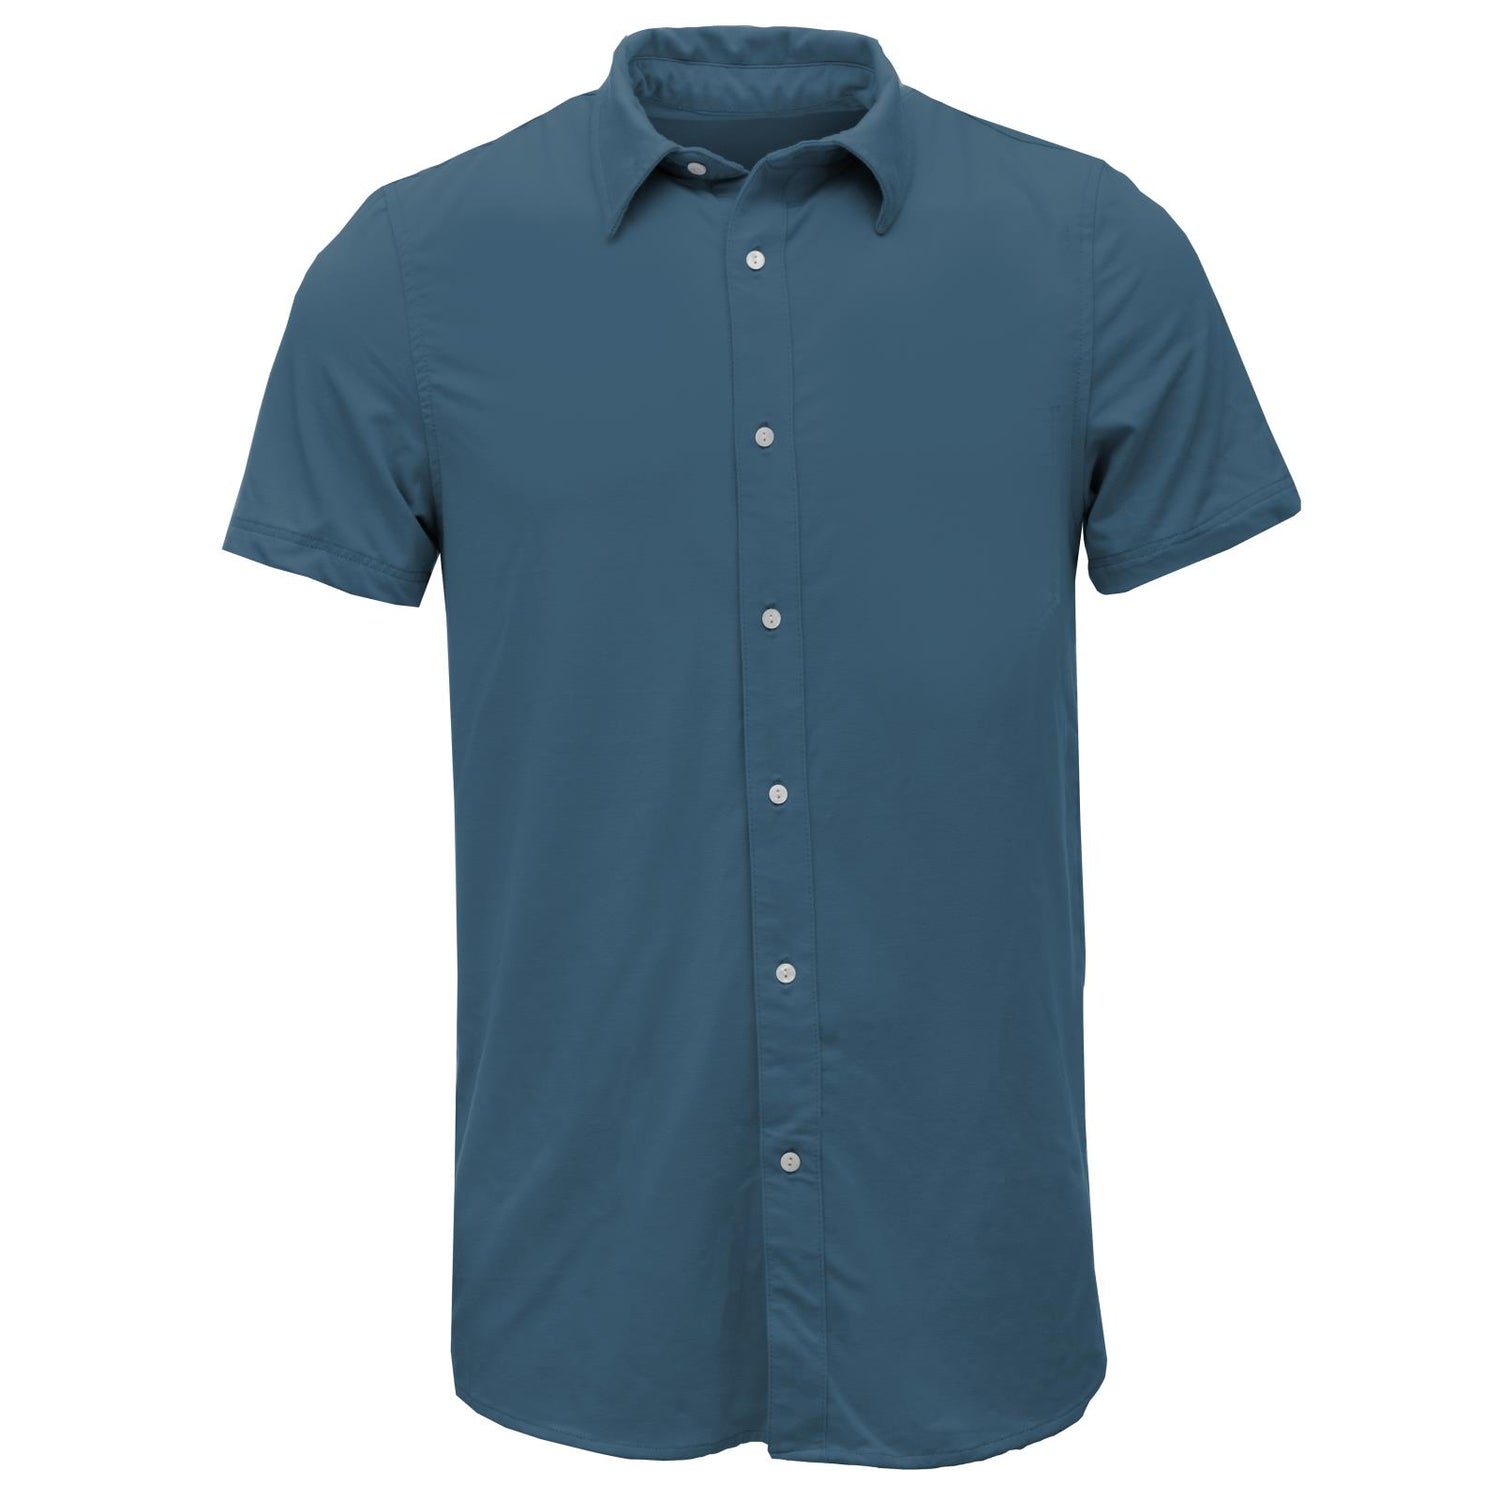 Men's Short Sleeve Luxe Jersey Button Down Shirt in Deep Sea